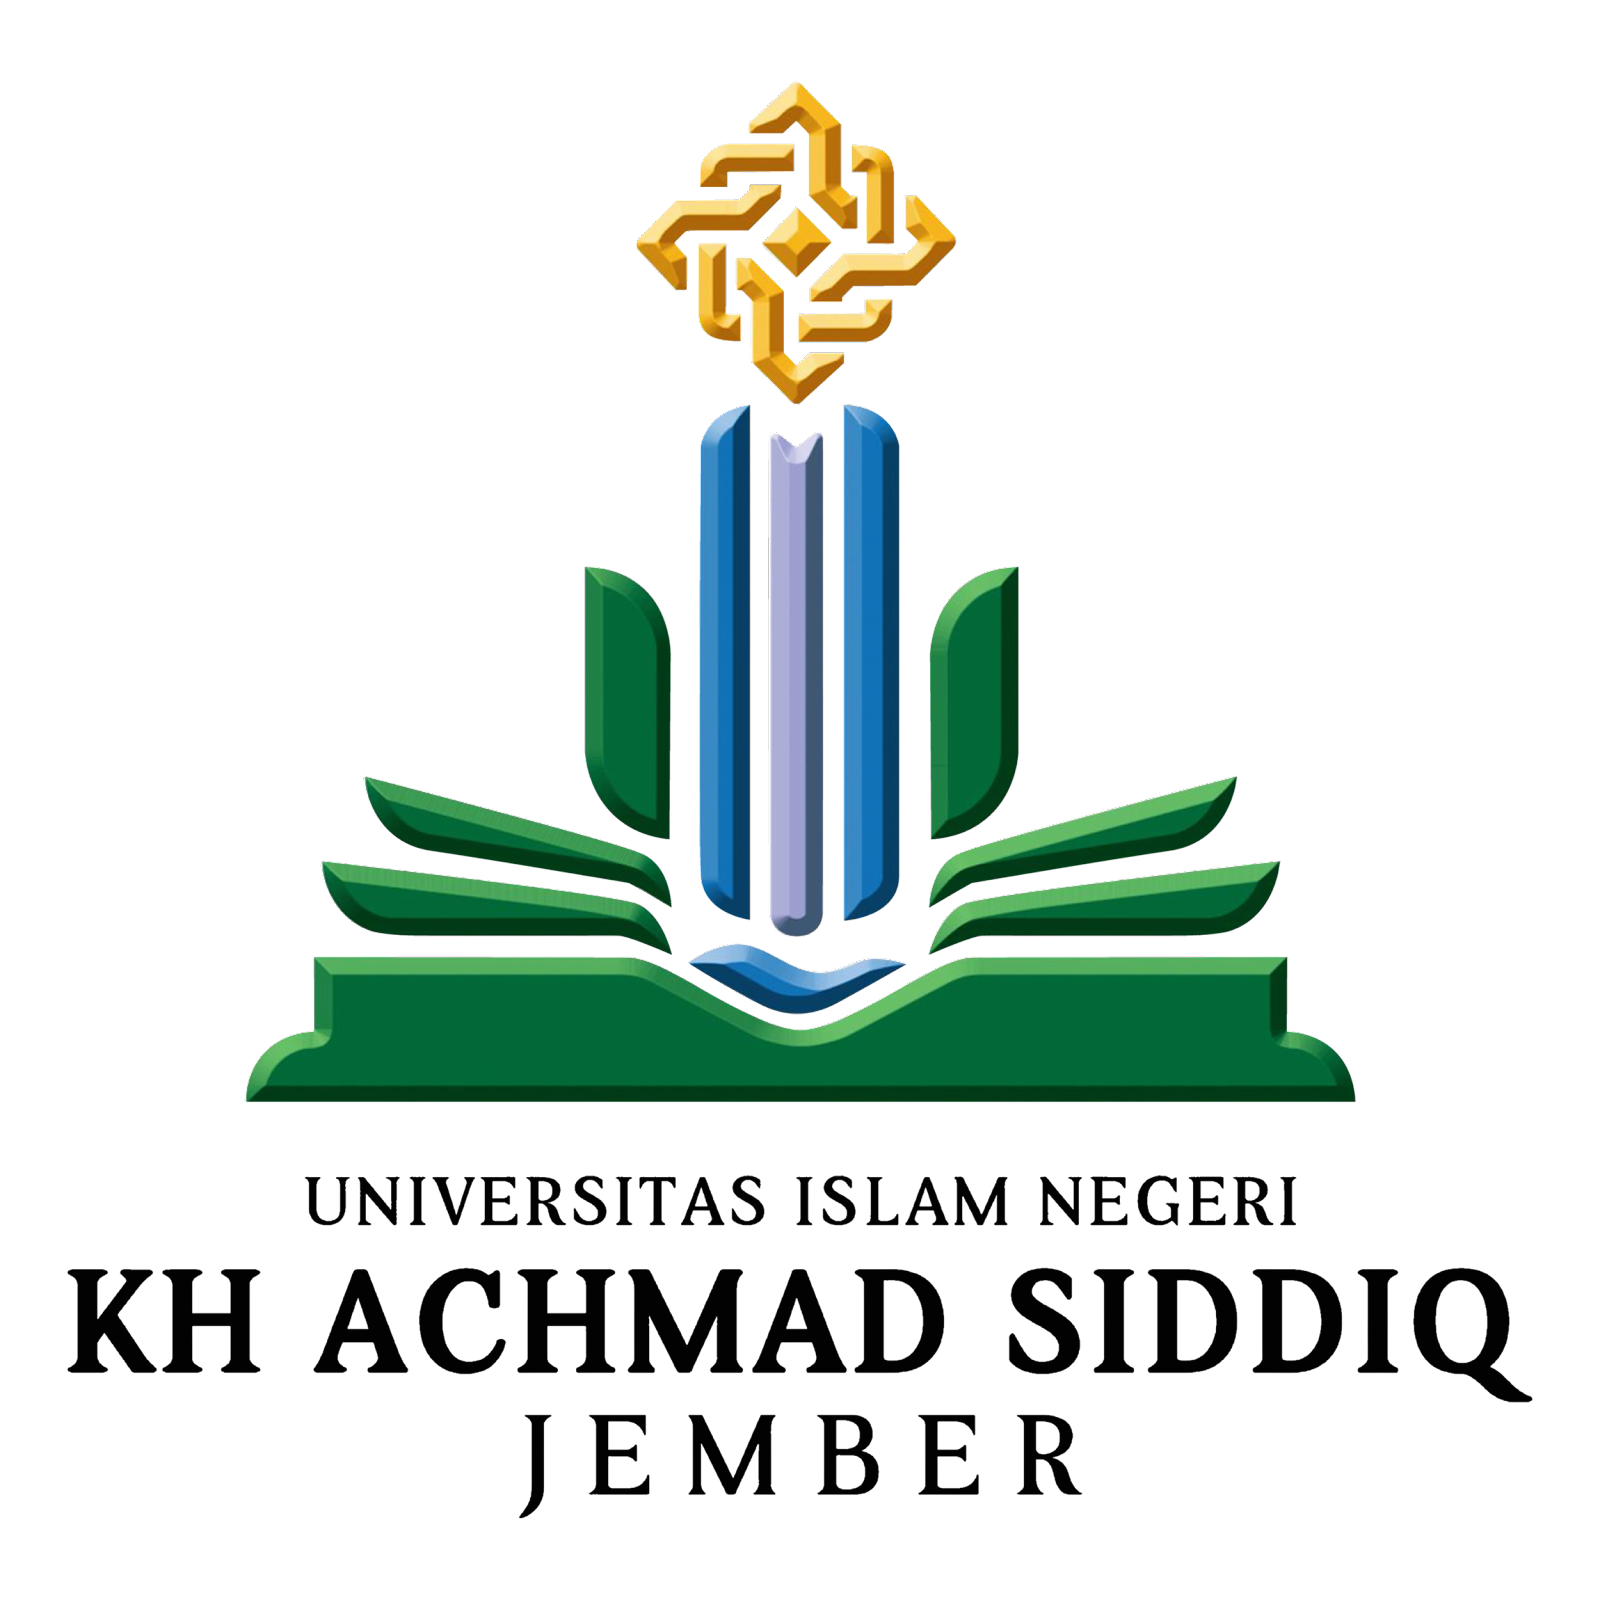 Logo Uin Jember Png